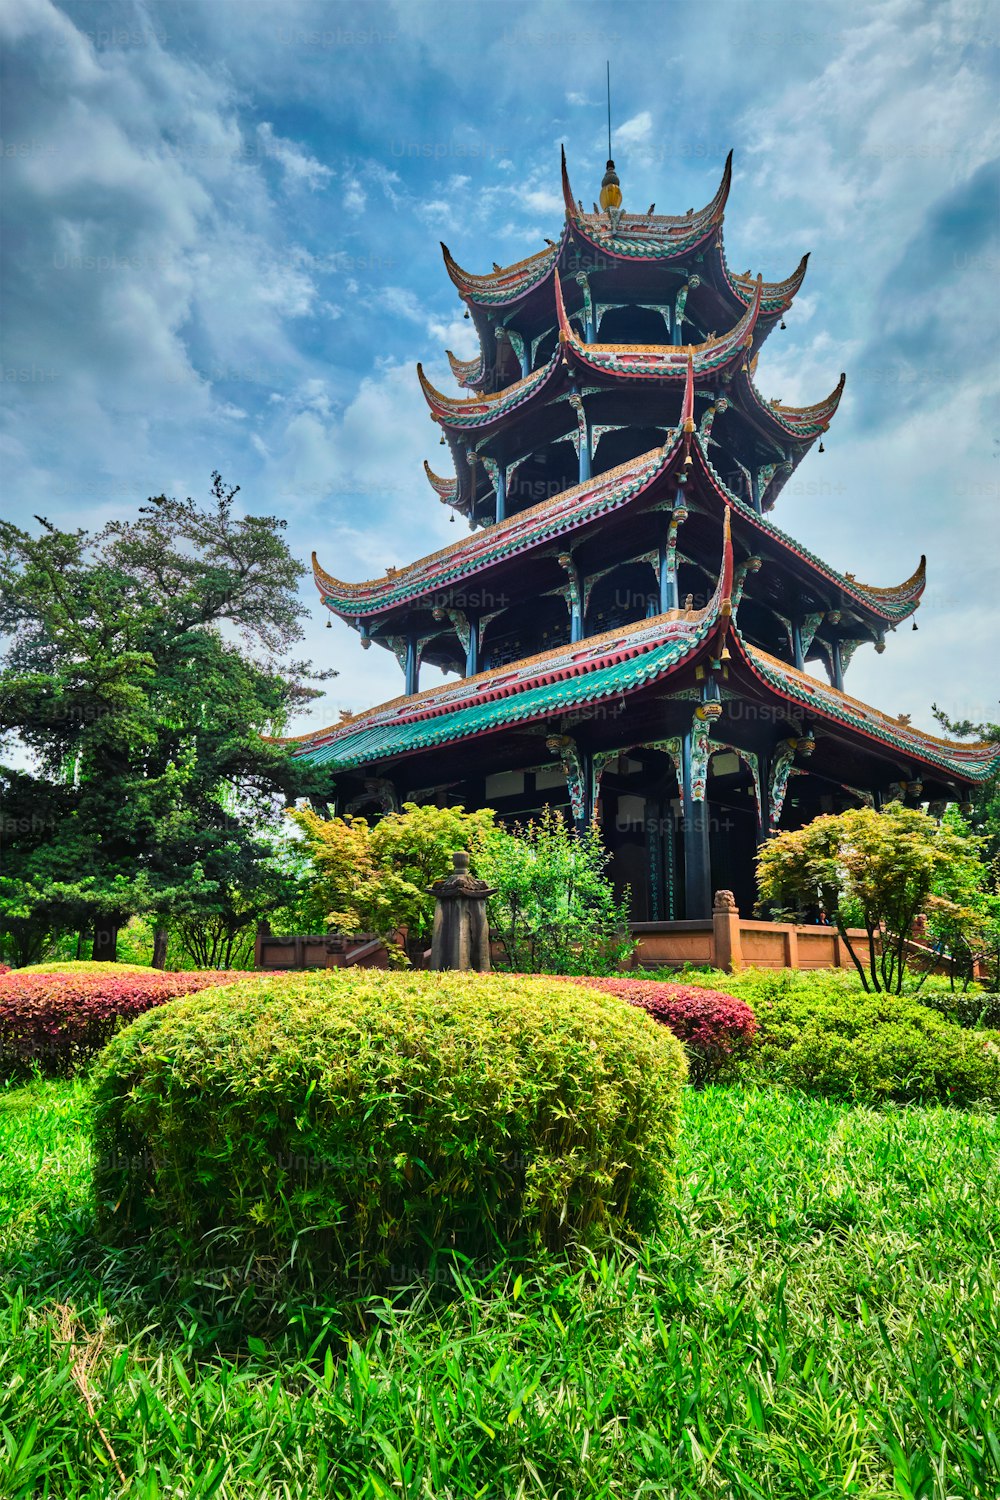 Wangjiang Pavilion (Wangjiang Tower) in Wangjianglou Park. Chengdu, Sichuan, China